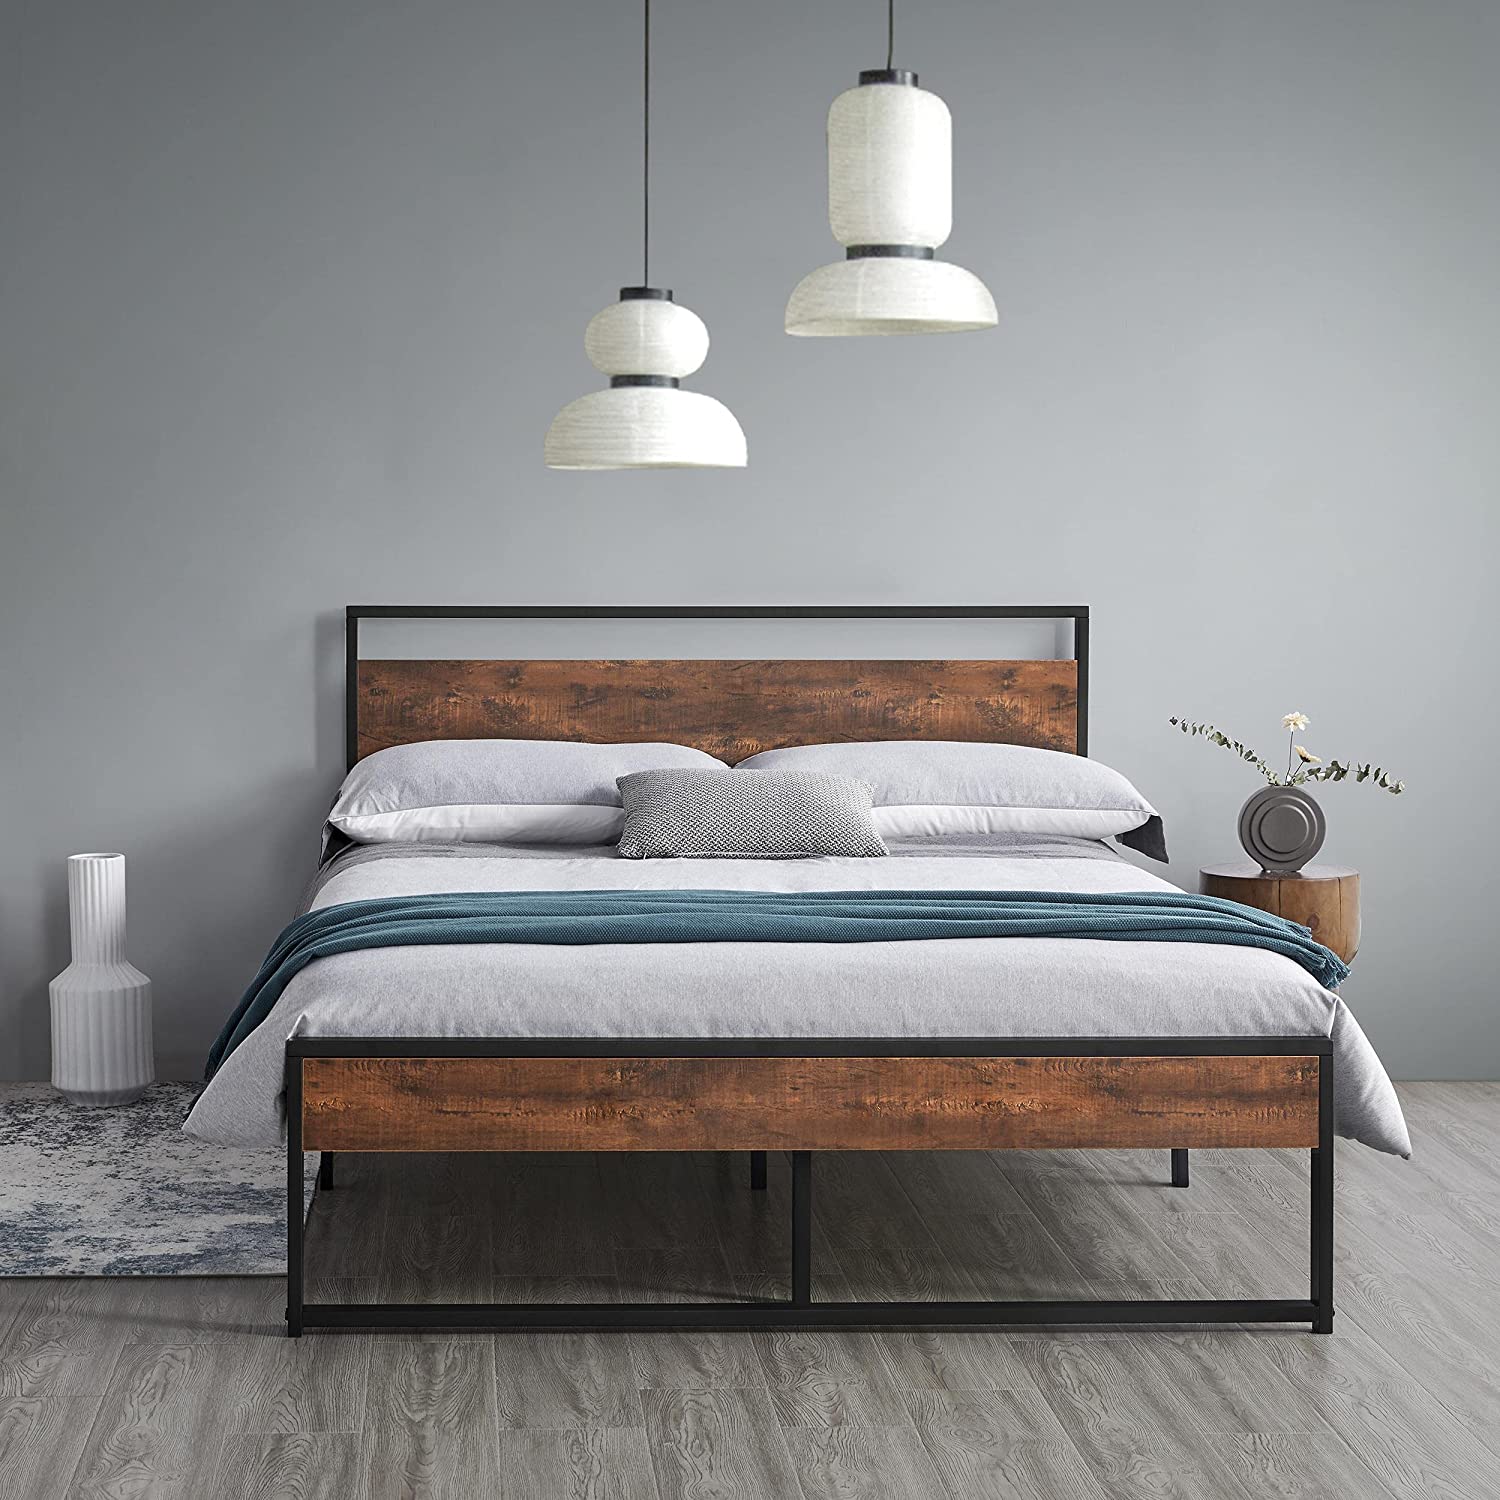 mẫu giường ngủ gỗ lim đẹp